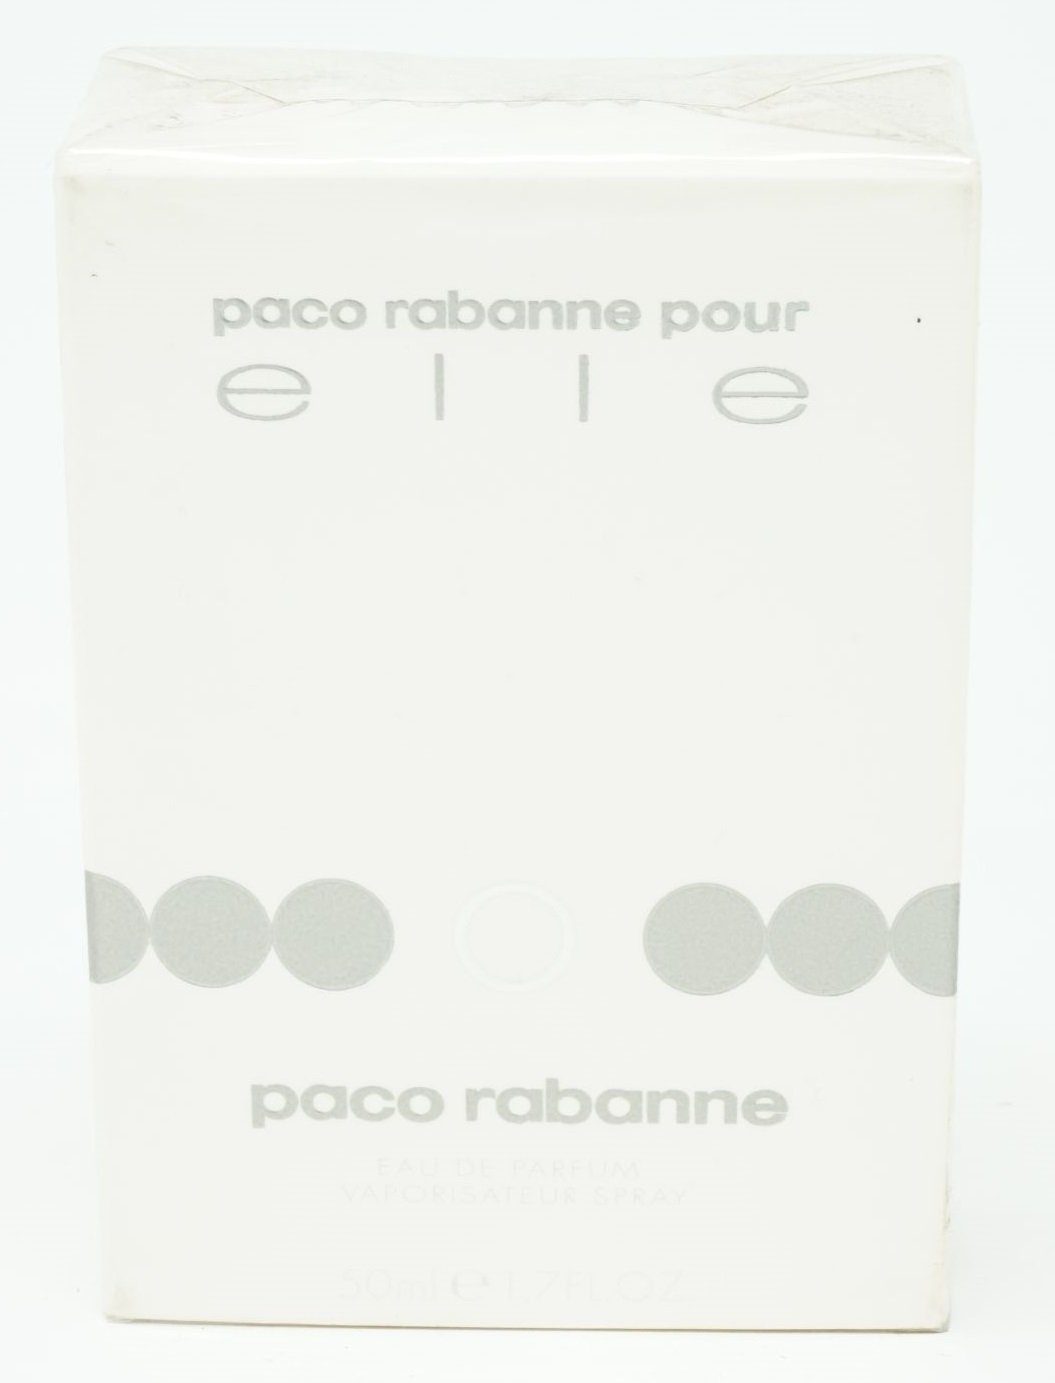 Eau de Rabanne 50ml Eau Pour Paco Elle Parfum Parfum de paco rabanne Spray